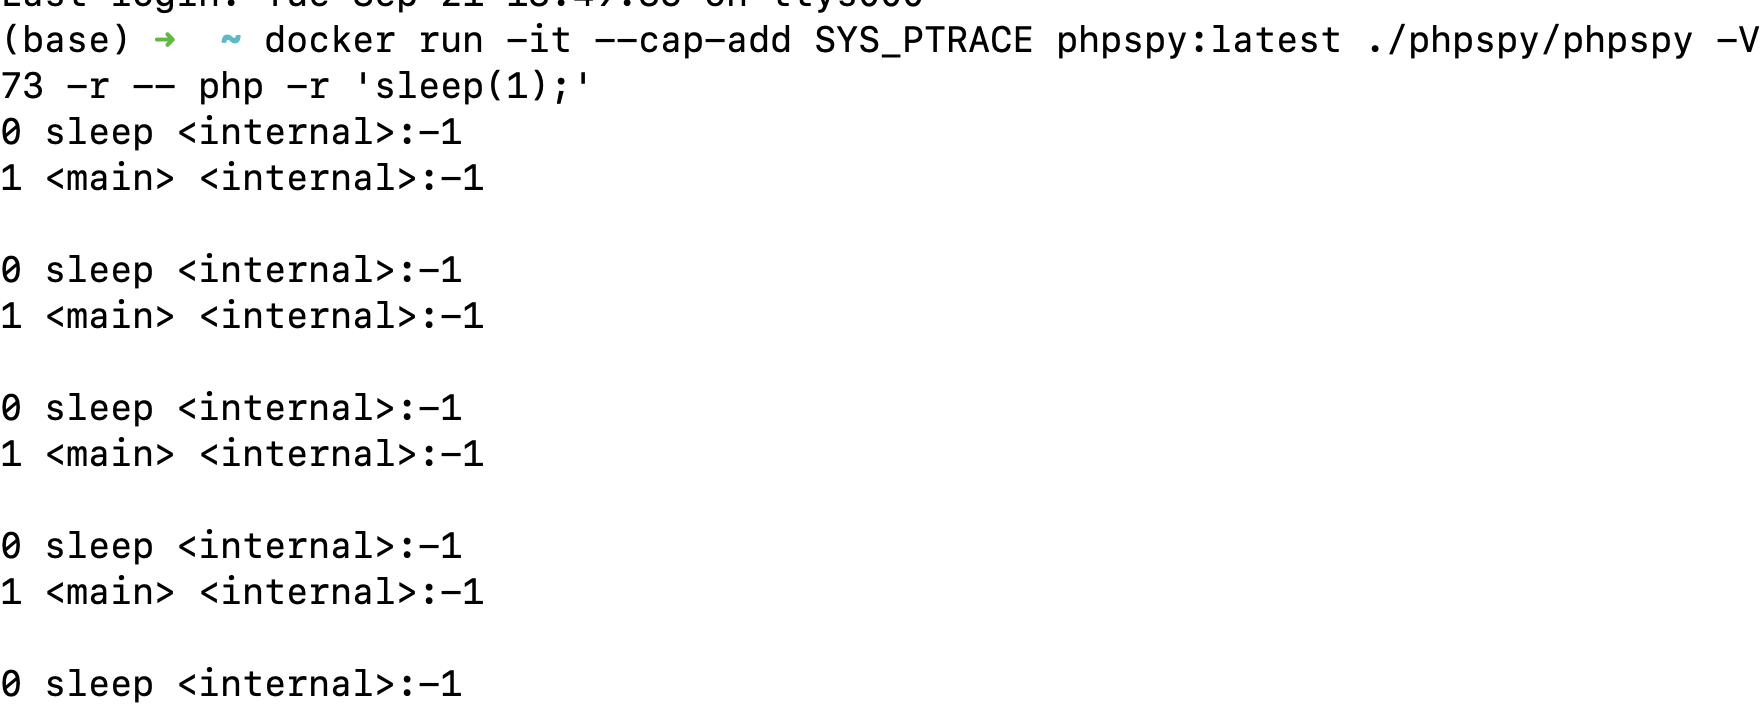 phpspy 进行php 项目性能分析